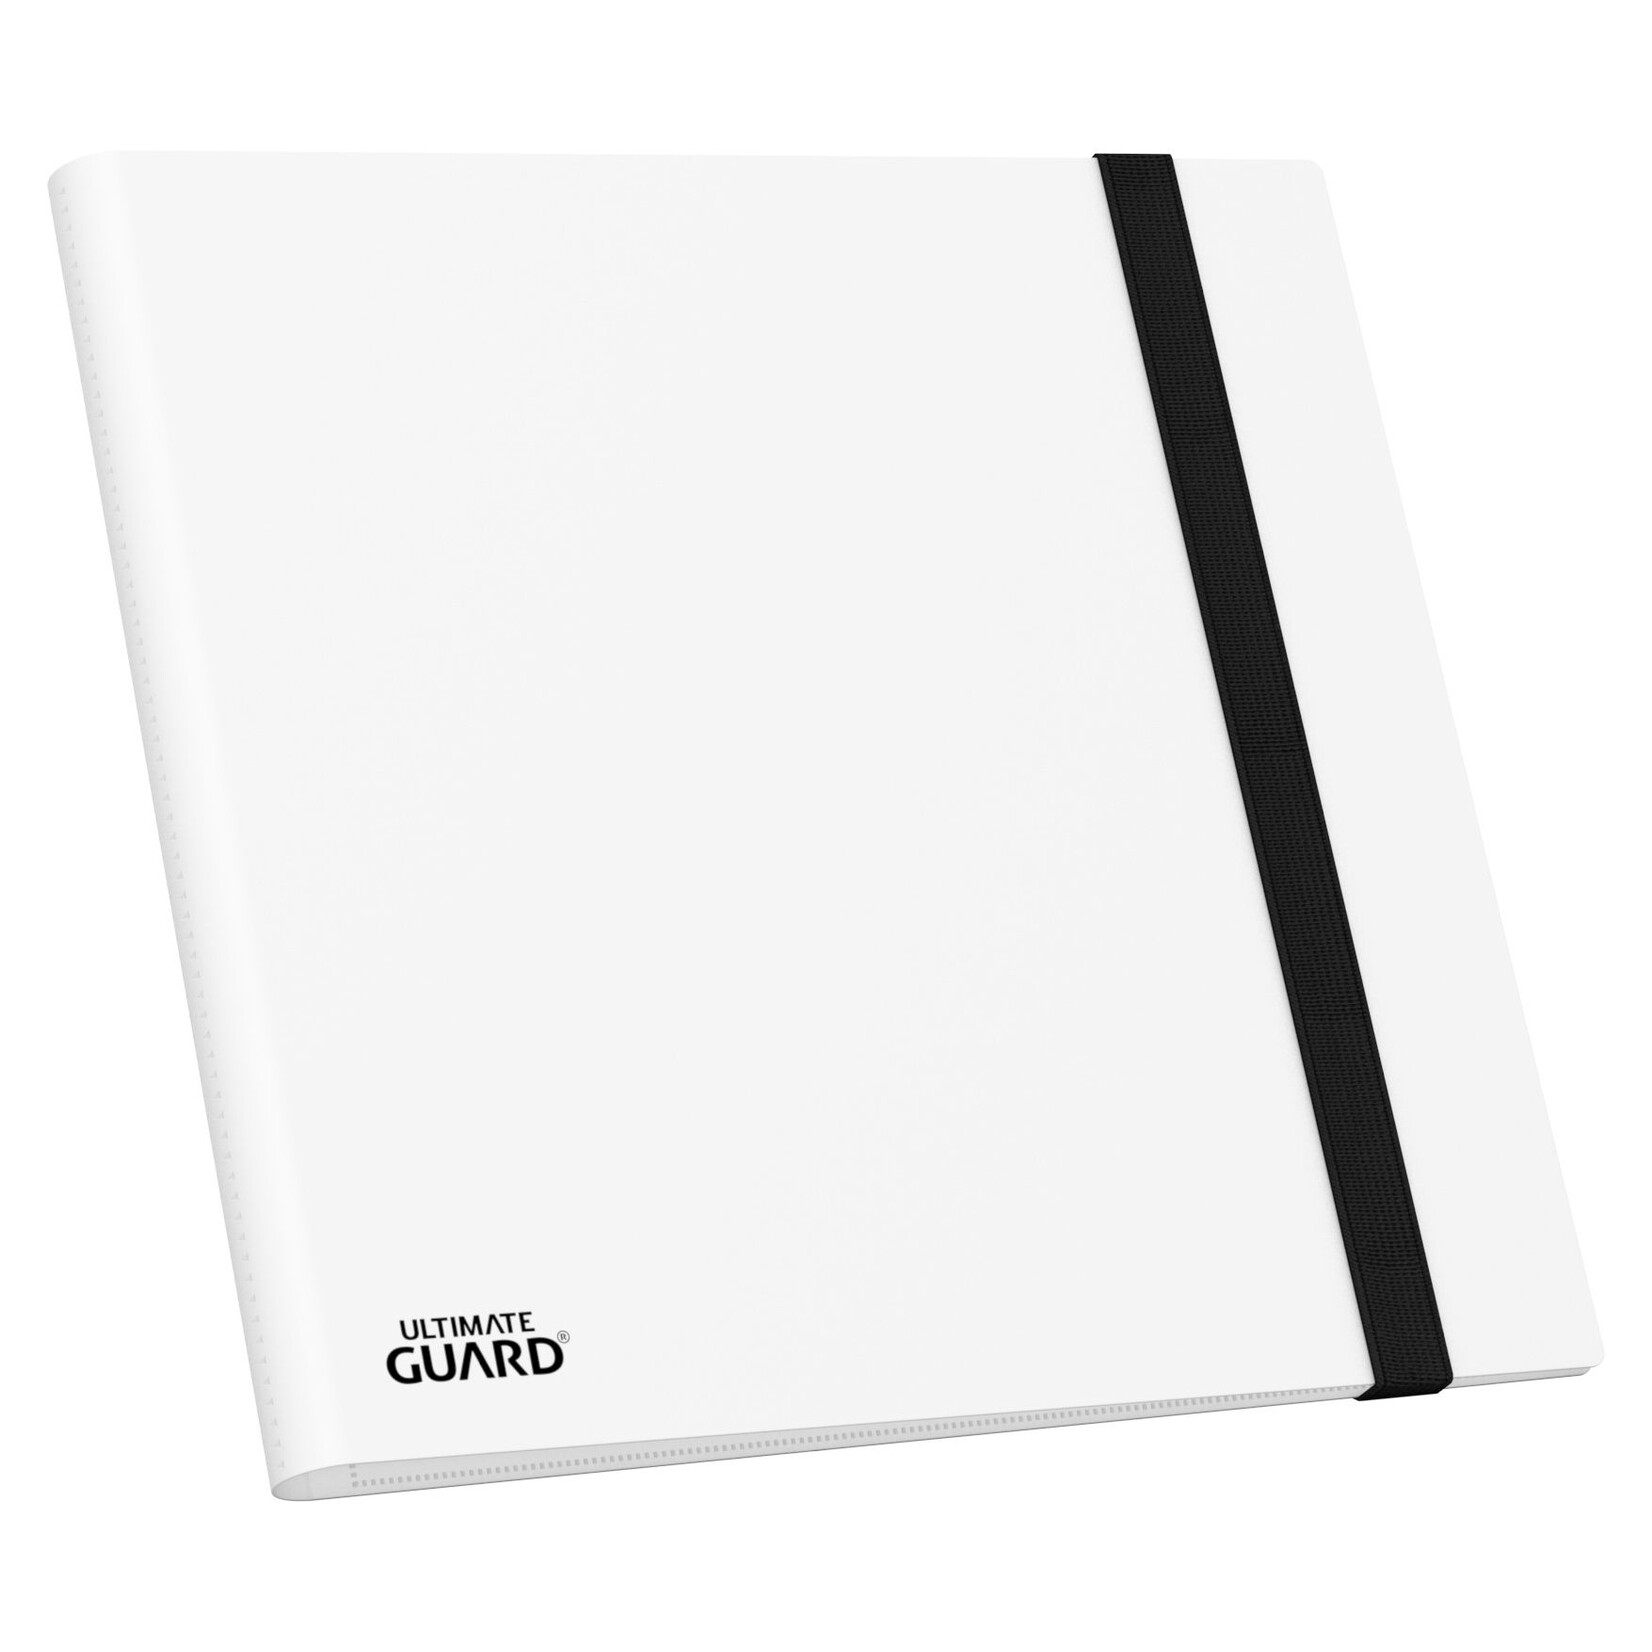 Ultimate Guard Flexxfolio 480 - 24-Pocket (Quadrow) - White